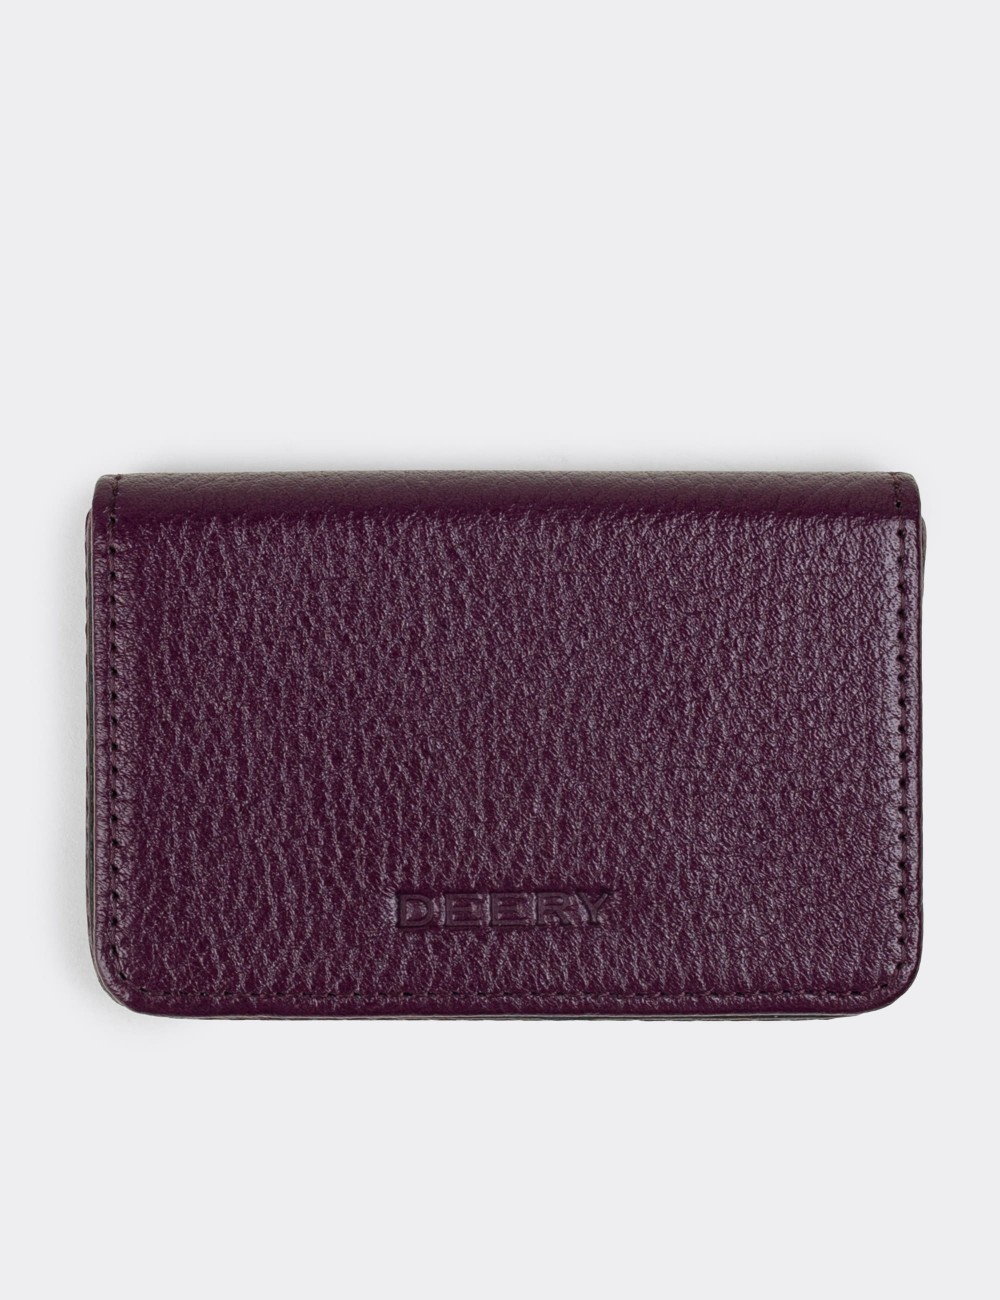  Leather Damson Men's Wallet - 00522MMRDZ01